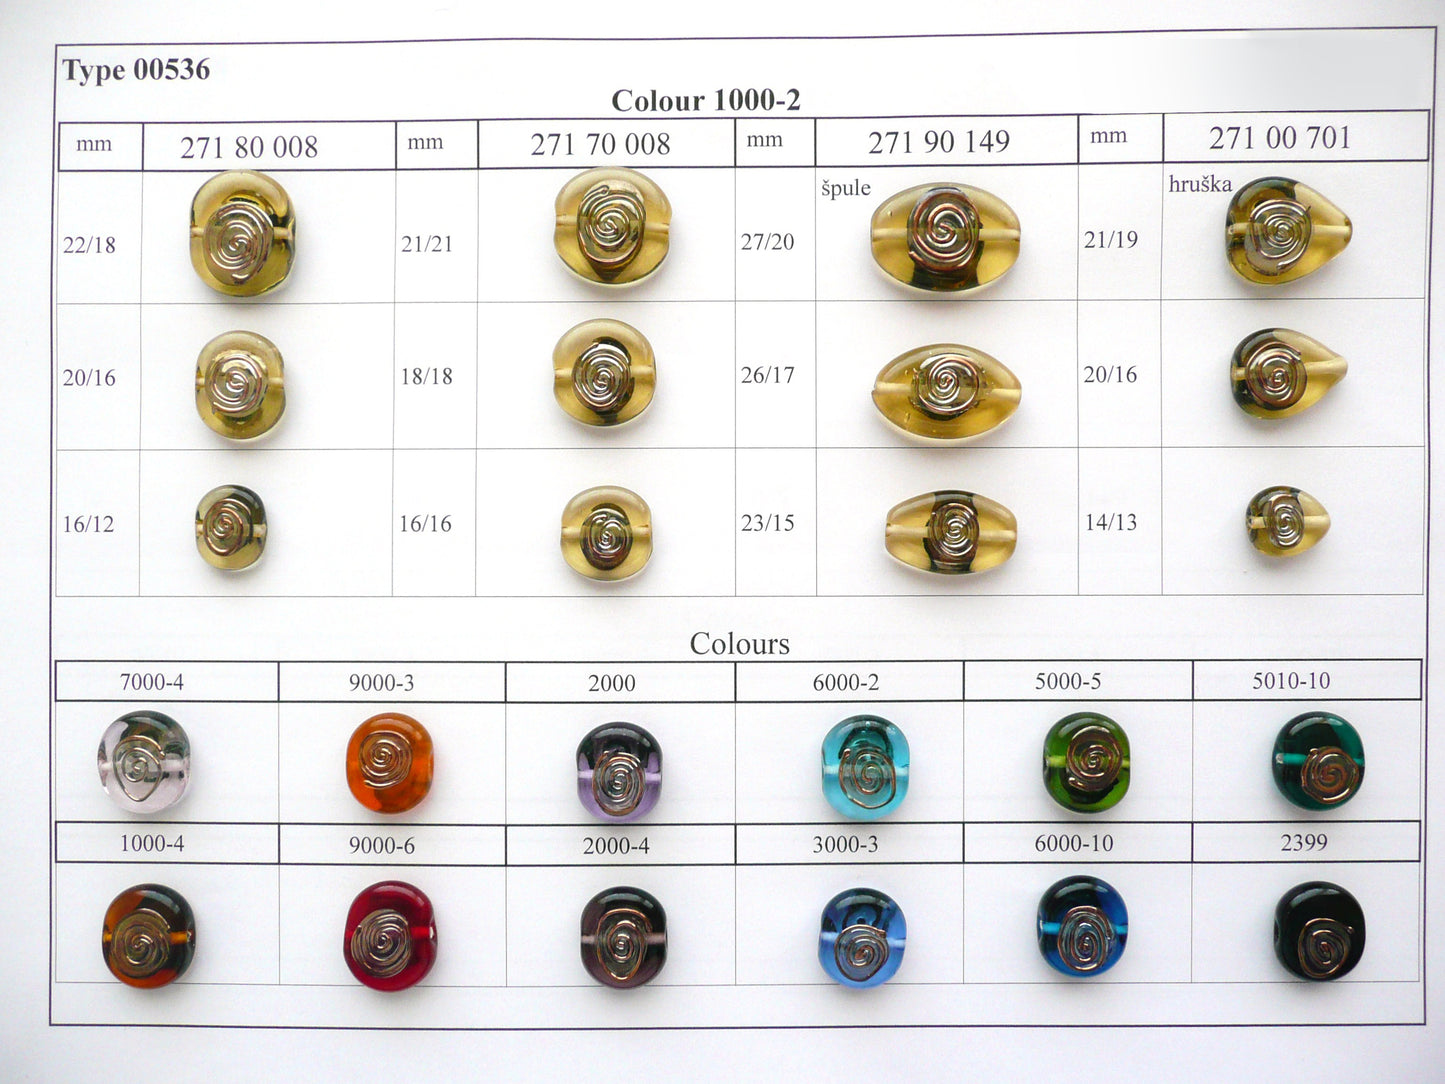 30 颗灯饰珠 536 / 扁平椭圆形 (271-80-008)，手工制作，宝仕奥莎玻璃，捷克共和国